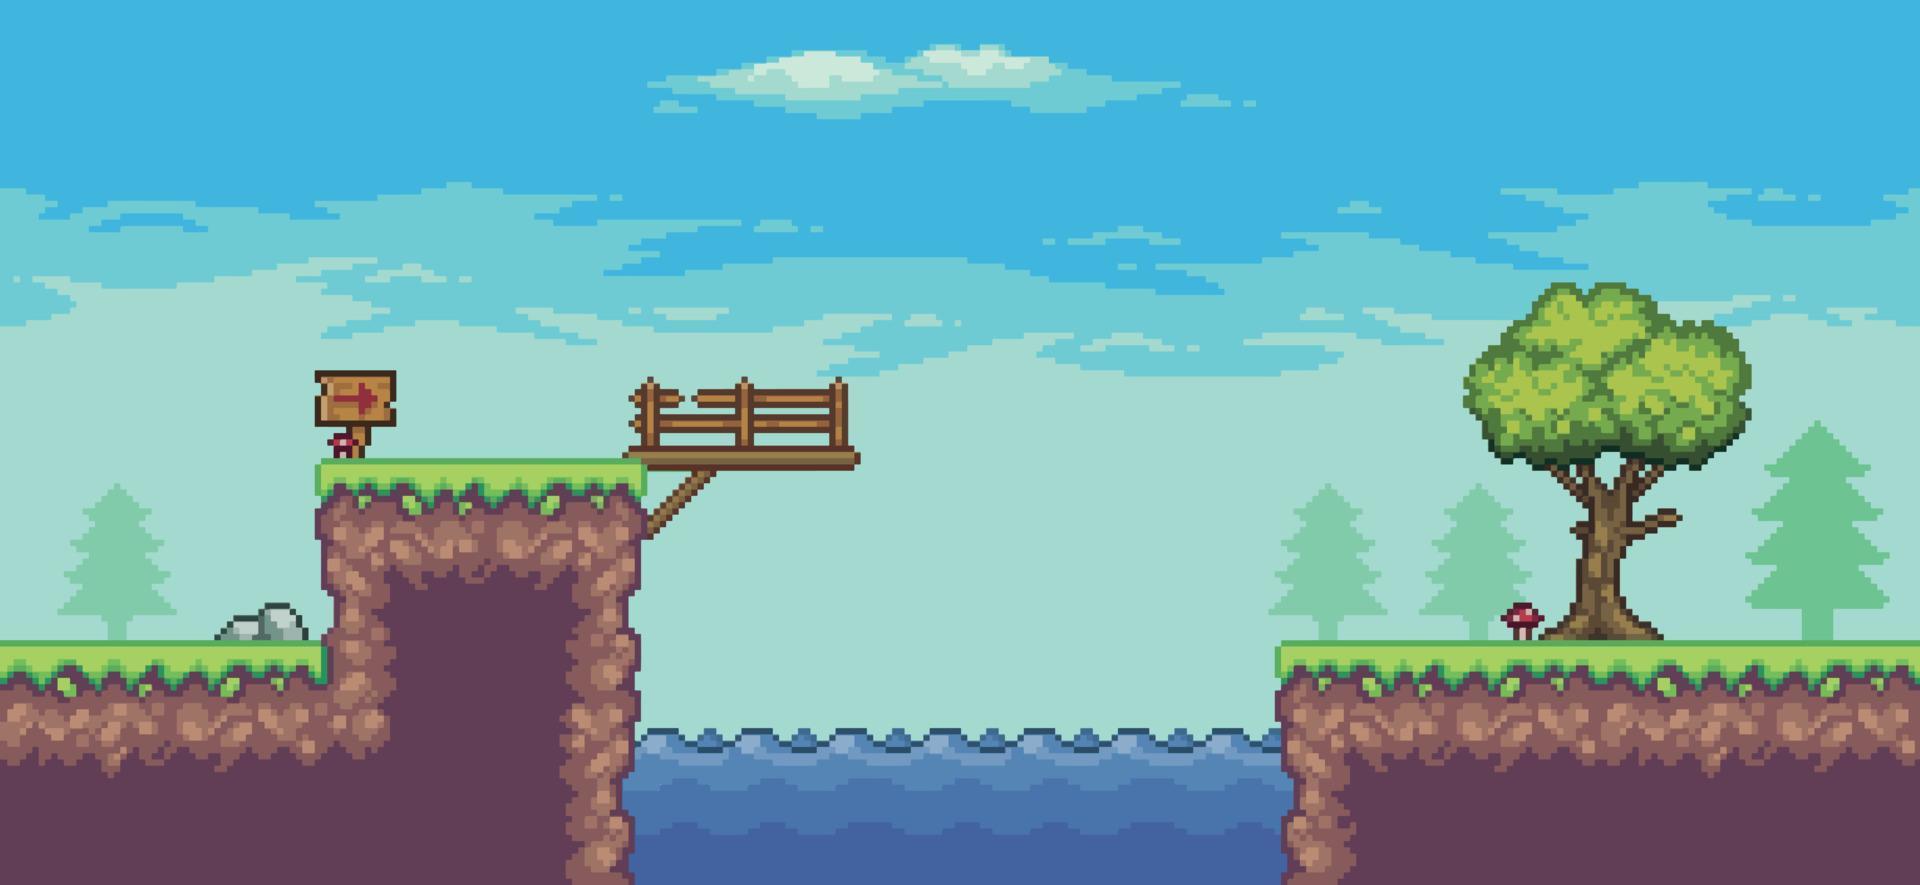 Pixel-Art-Arcade-Spielszene mit Baum, See, Brücke, Holzbrett und Wolken 8-Bit-Vektorhintergrund vektor